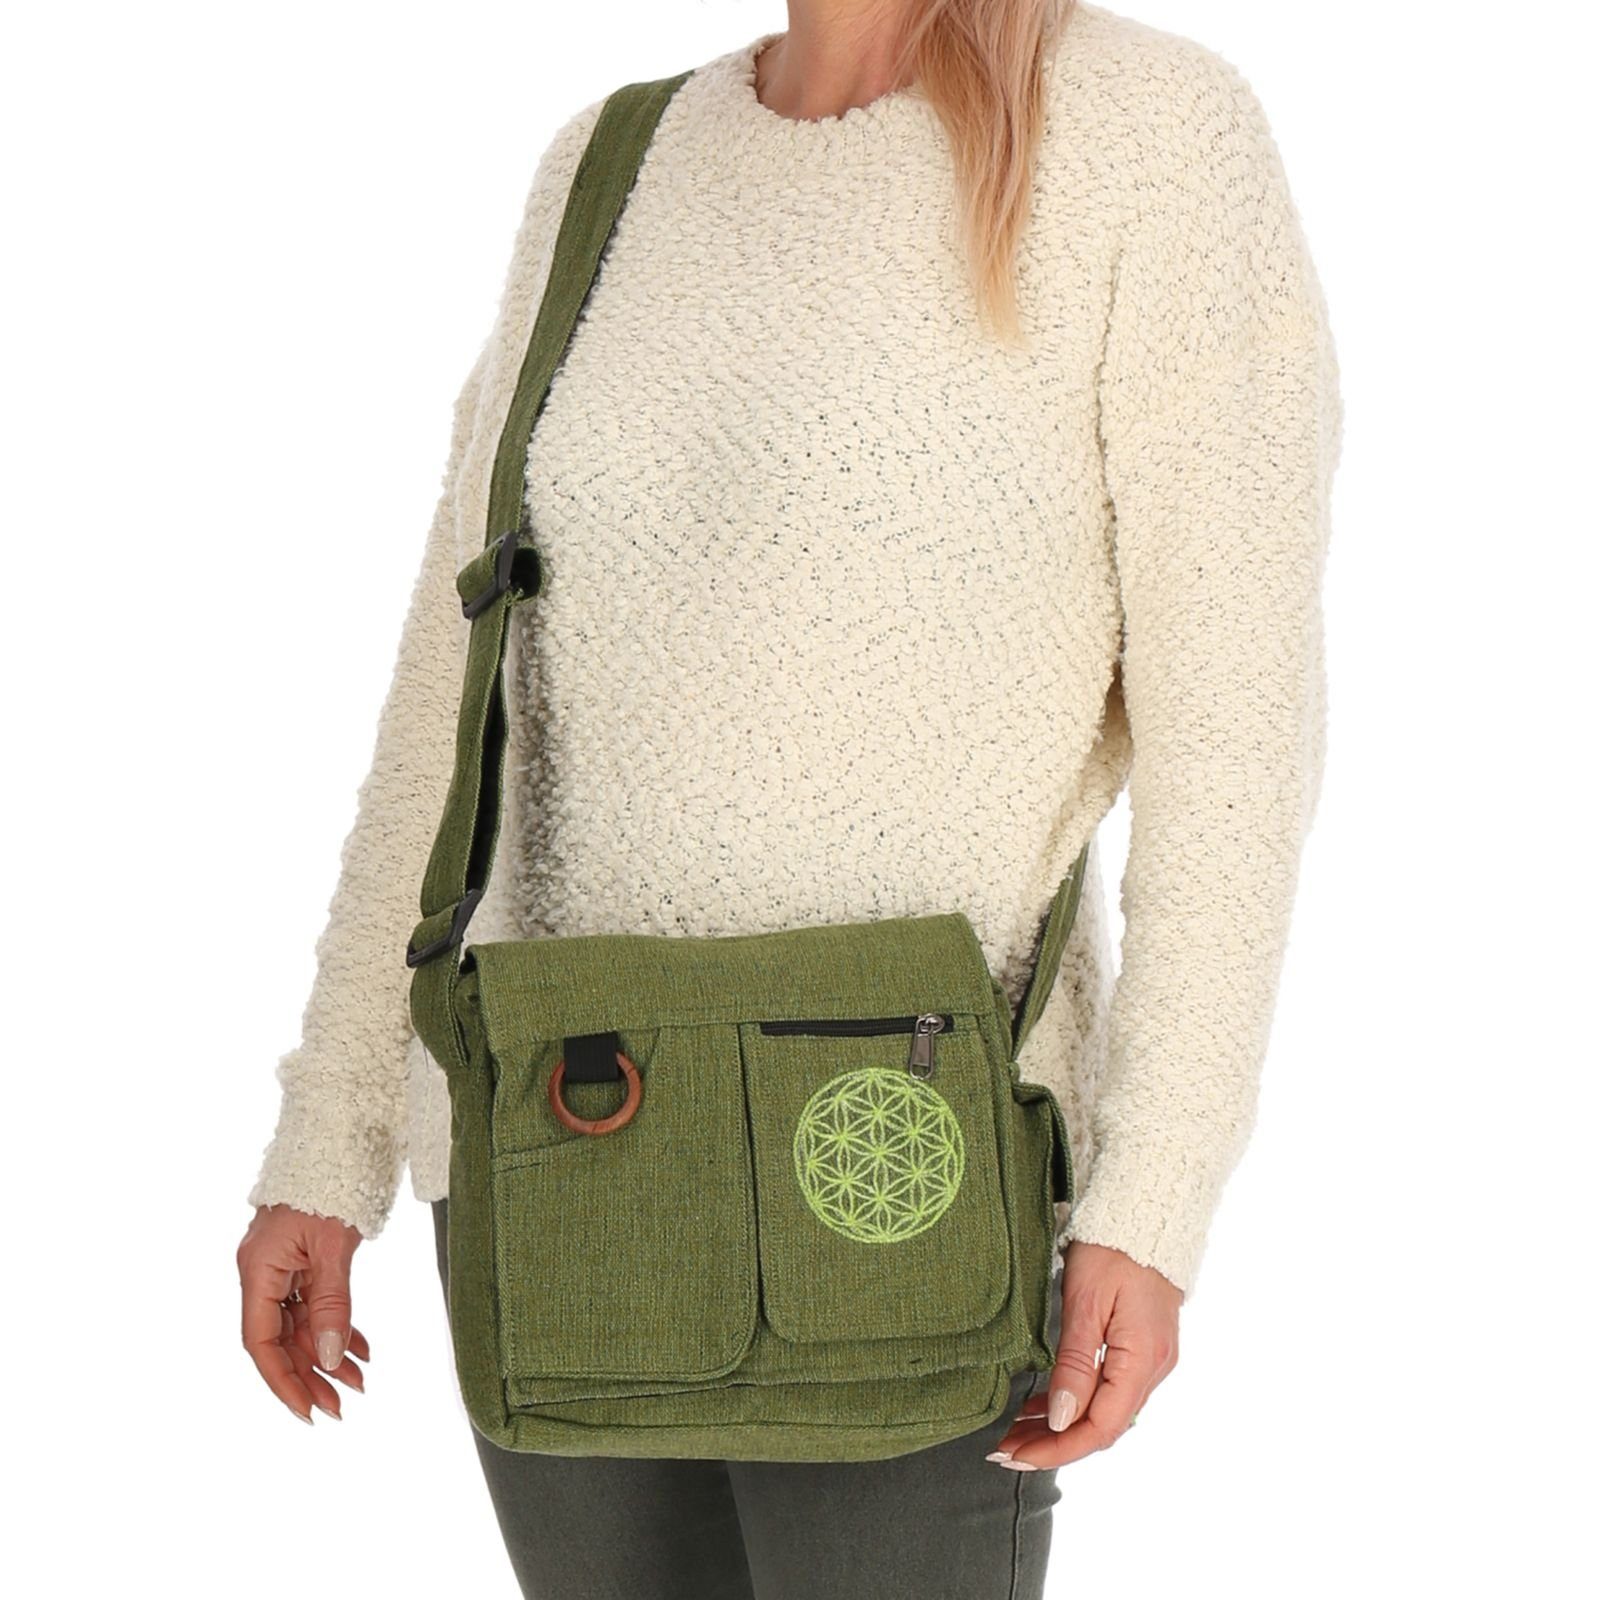 Lebensblume MAGIE Hippie Tasche Umhängetasche +Schulterriemen UND Handtasche Schultertasche Grün KUNST